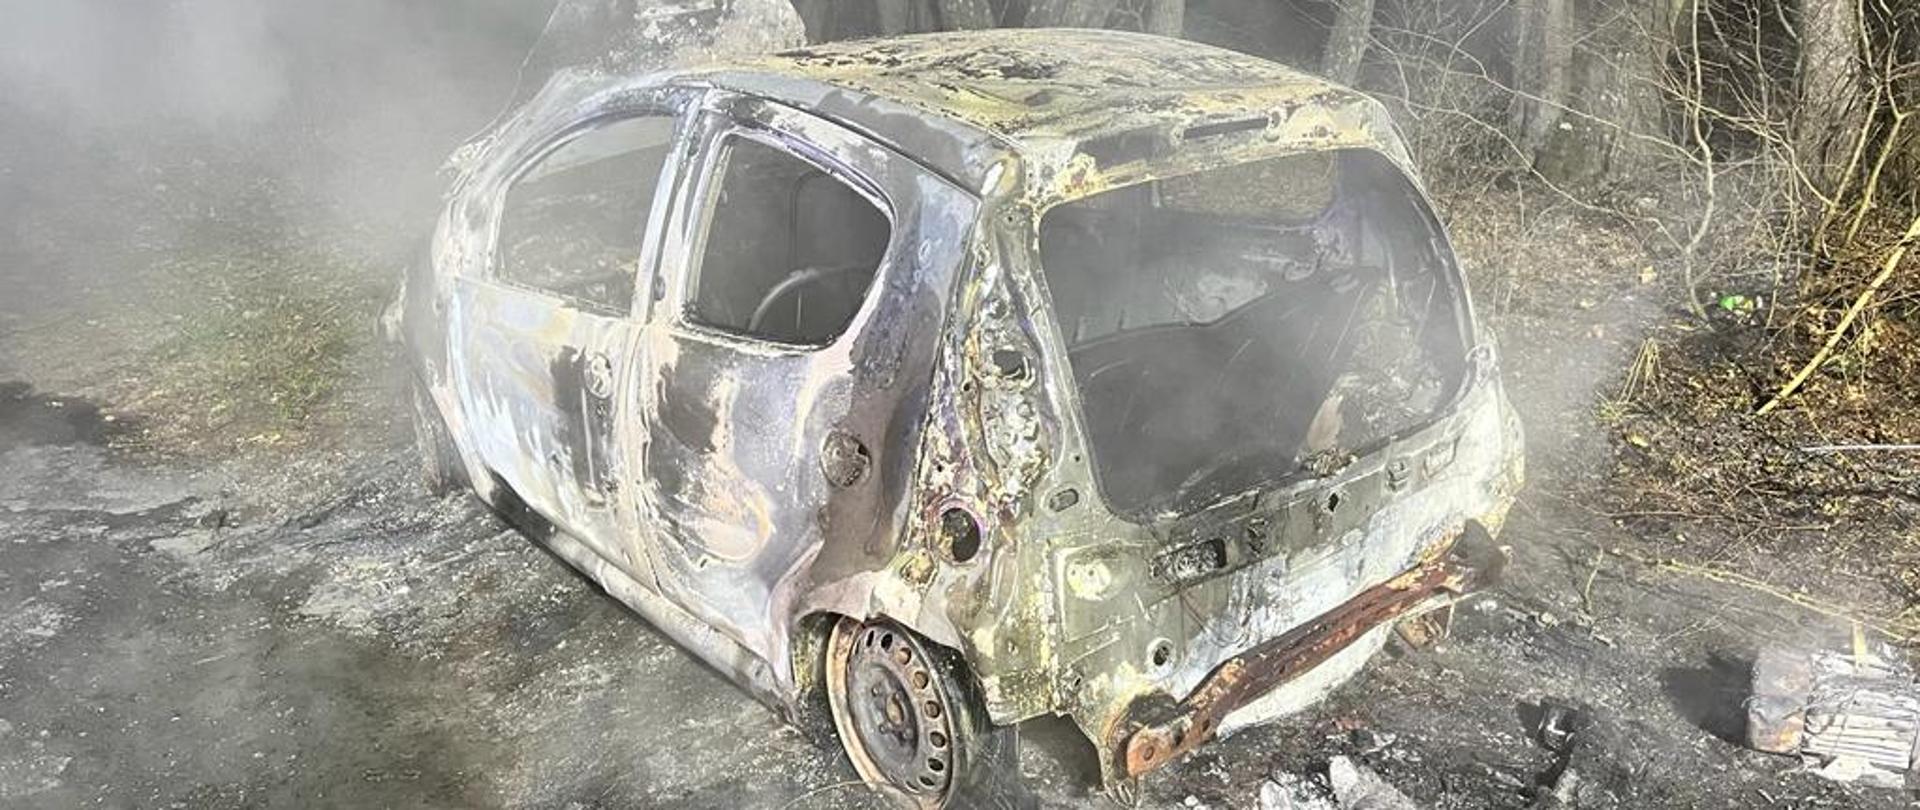 Zdjęcie przedstawia wrak doszczętnie spalonego samochodu osobowego stojący na drodze polnej.